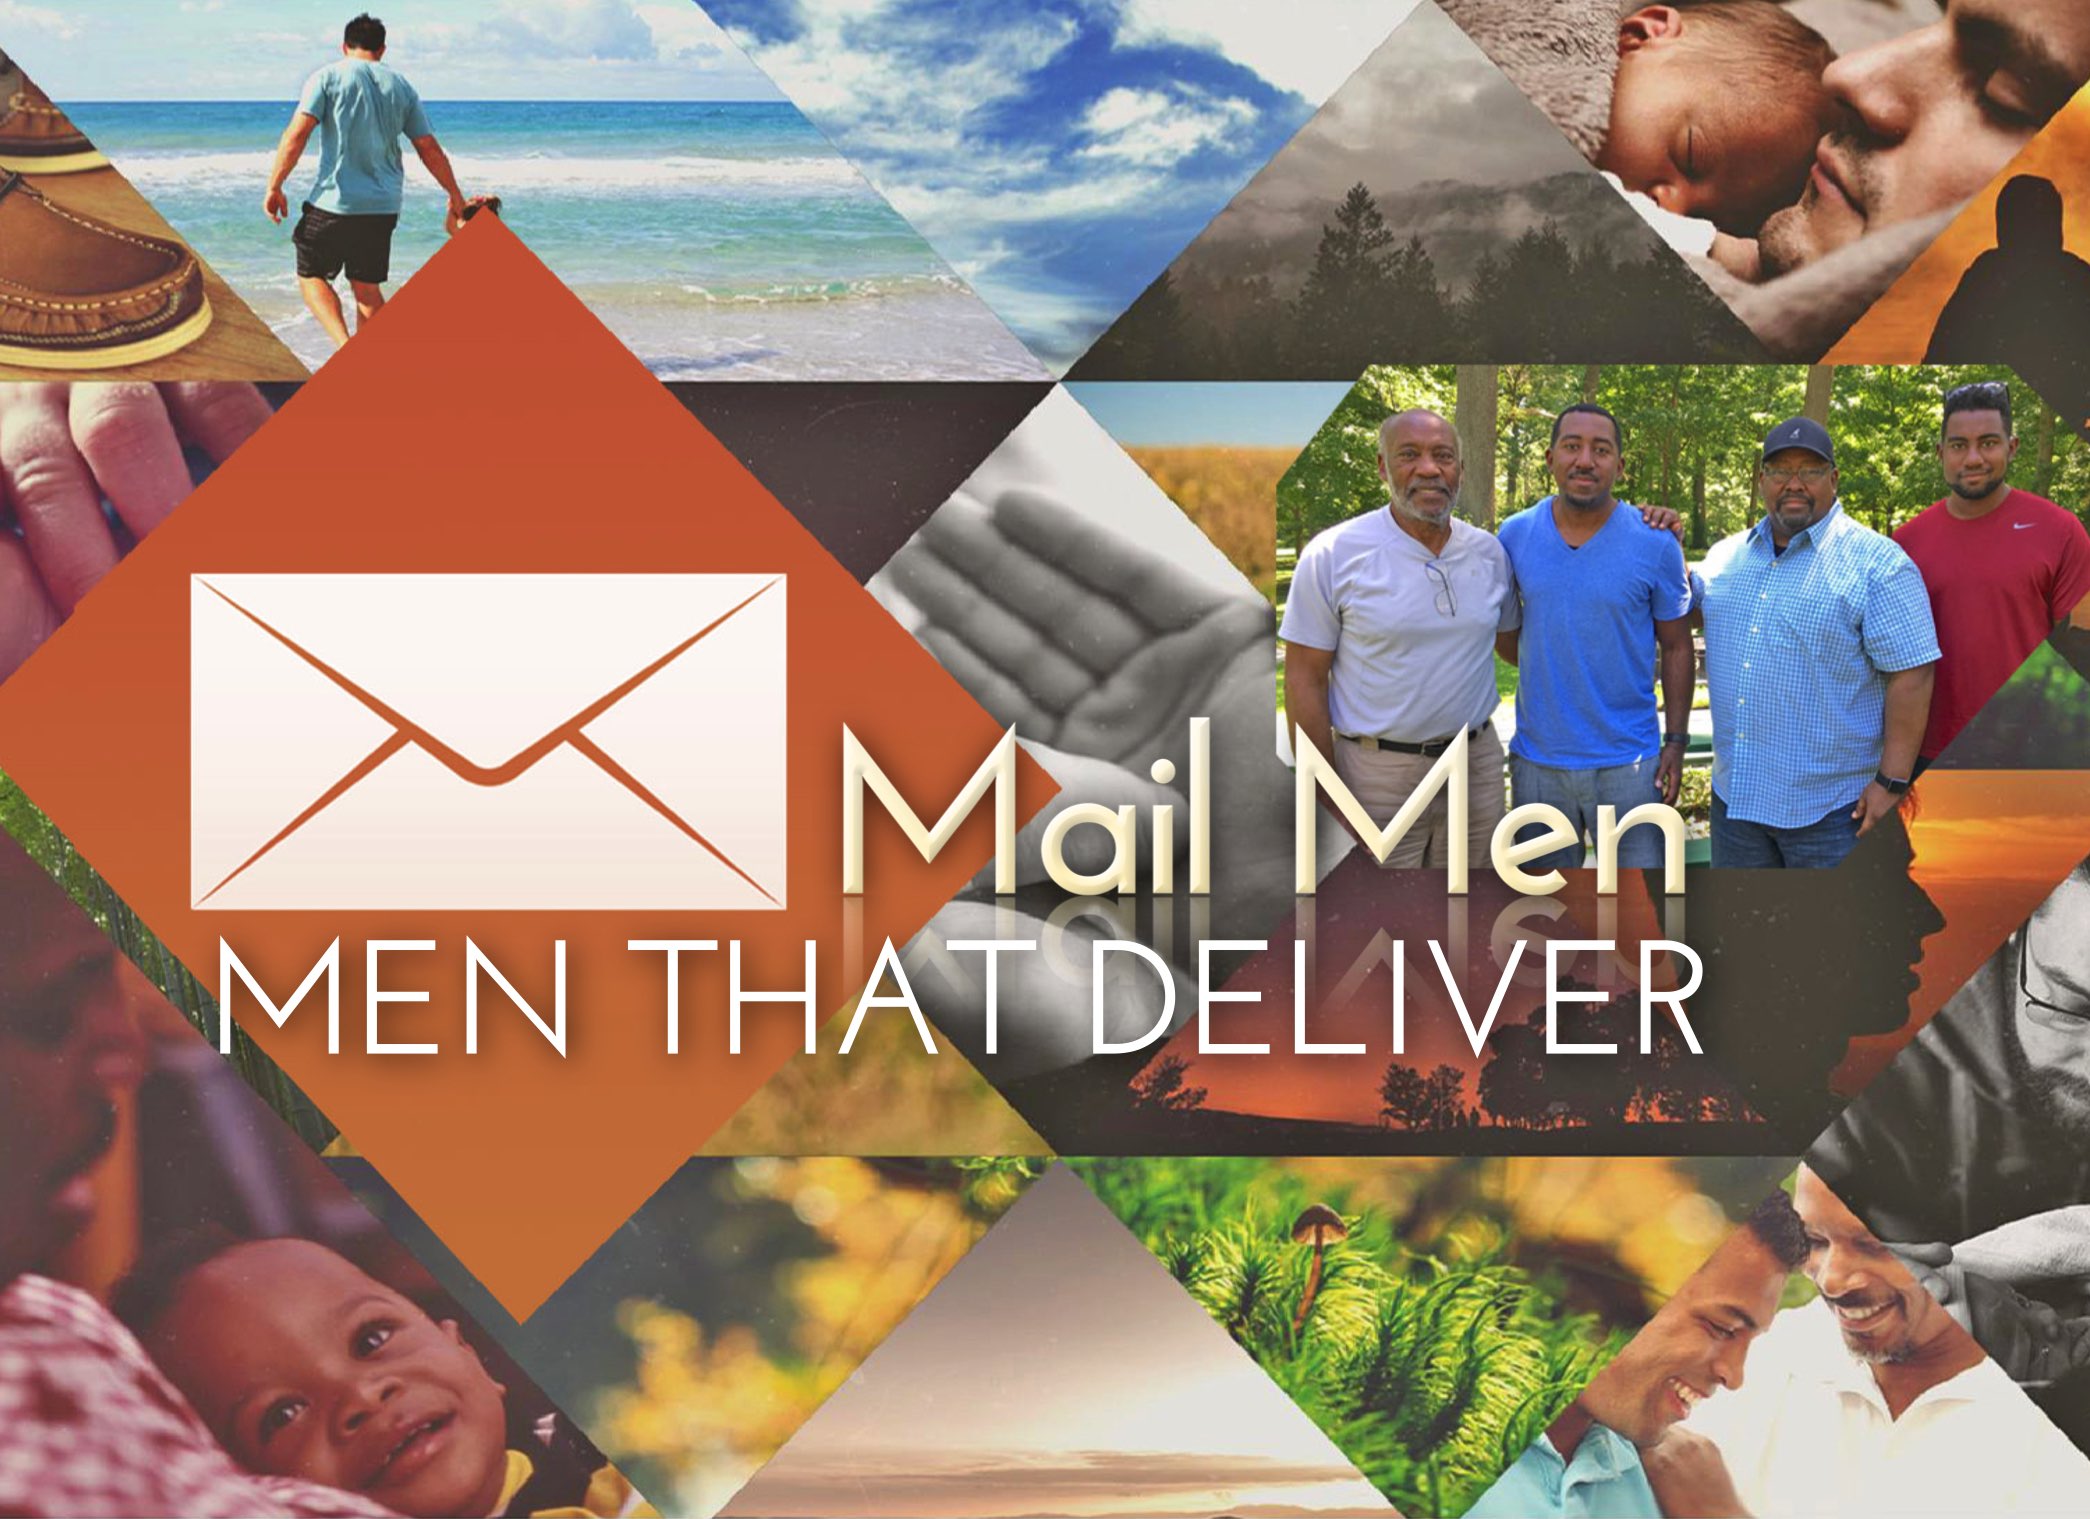 Mail Men: Men That Deliver.